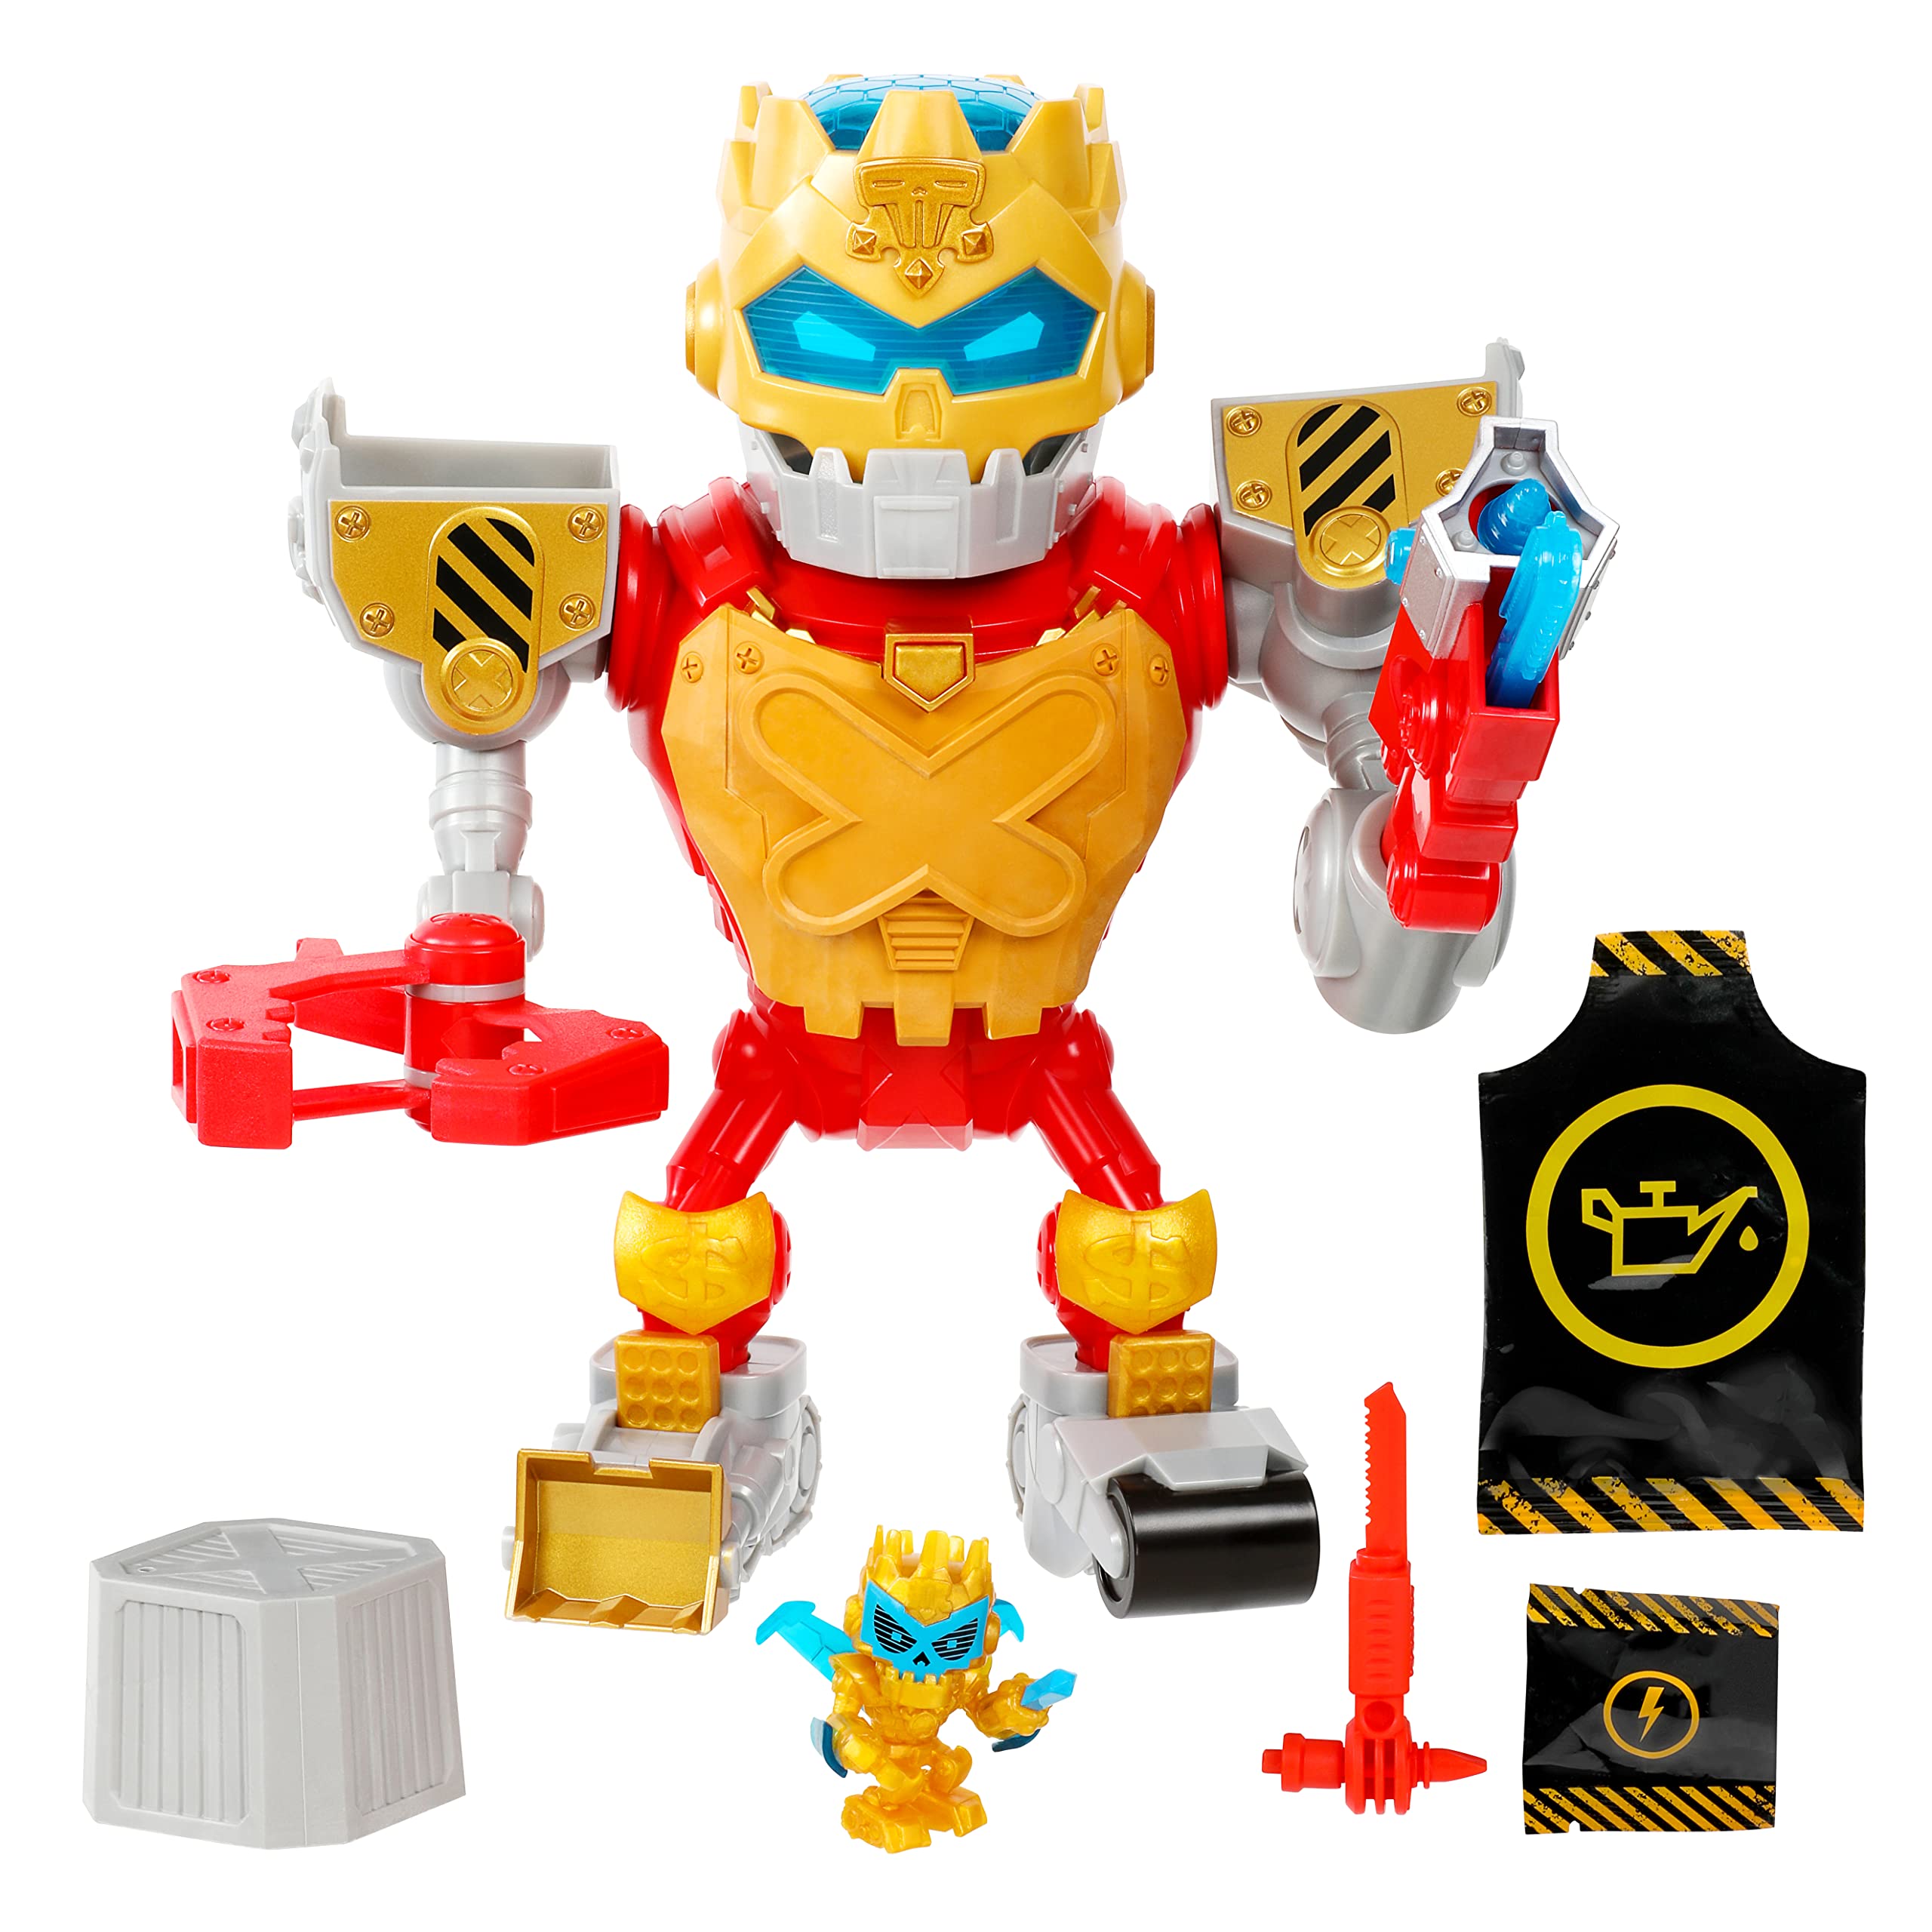 boutique en ligne TREASURE X Robots Gold - Méga Robot Trésor avec Lumières et Sons Réels. Répare, Assemble et Active-Le 25 Niveaux d’Aventure, Découvre Le Trésor avec de l’Or VÉRITABLE Garanti M2YhAMCY3 Vente chaude